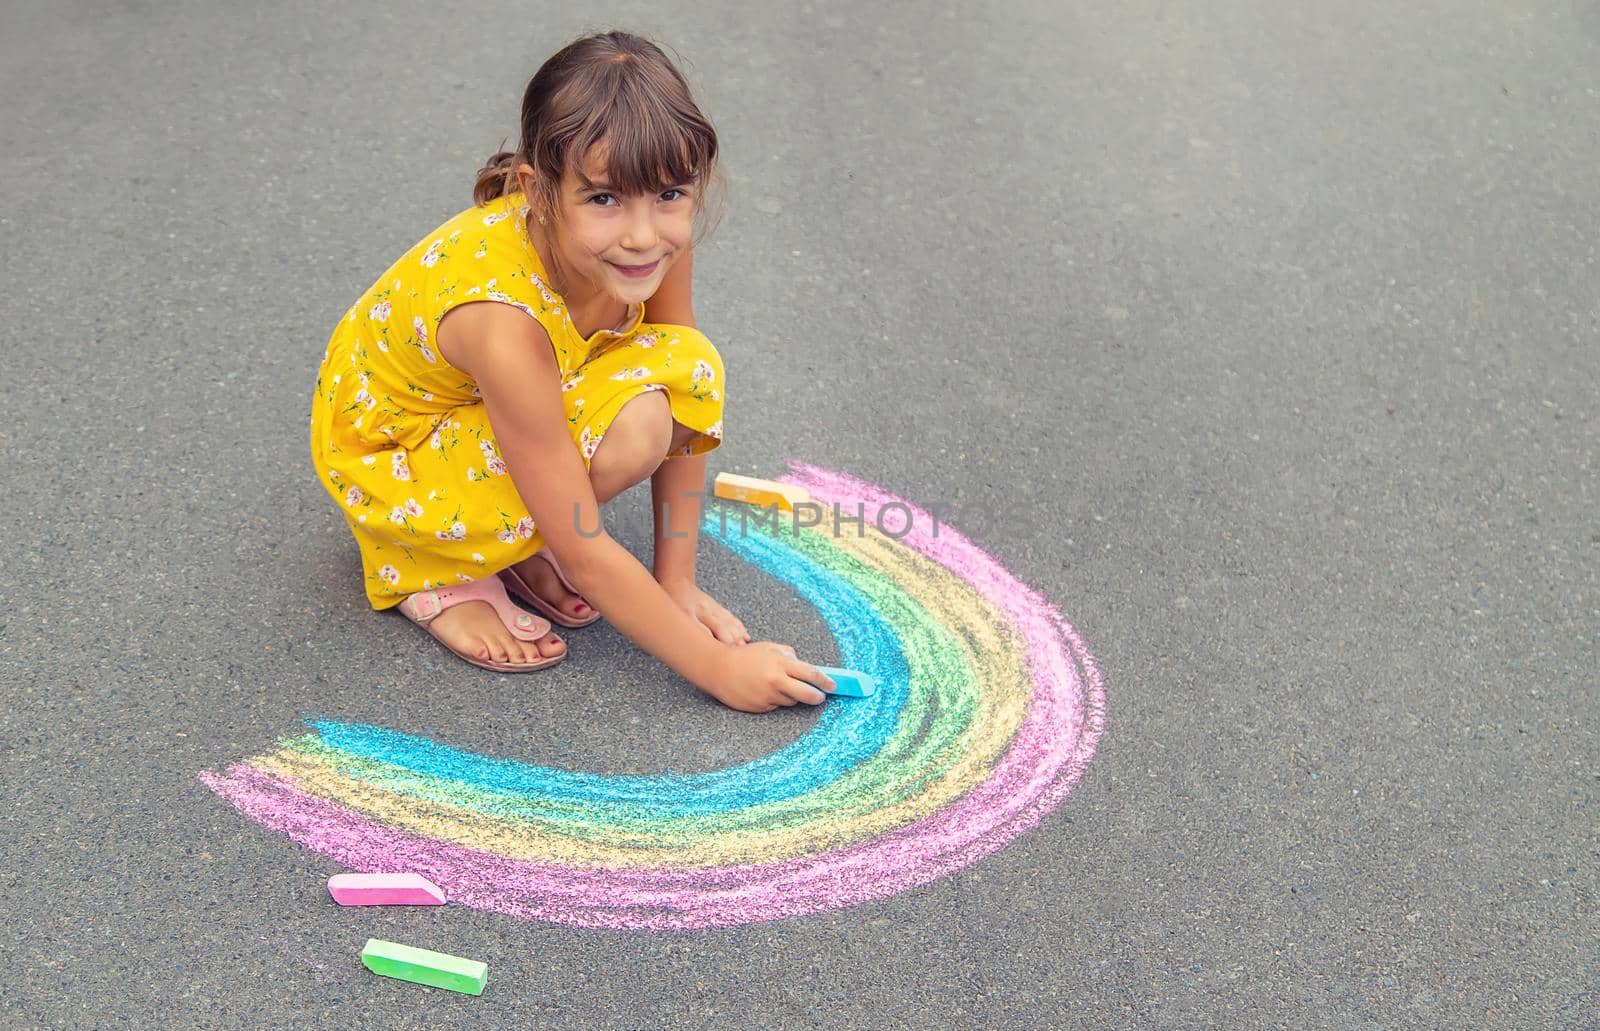 A child draws a rainbow on the asphalt. Selective focus. by yanadjana